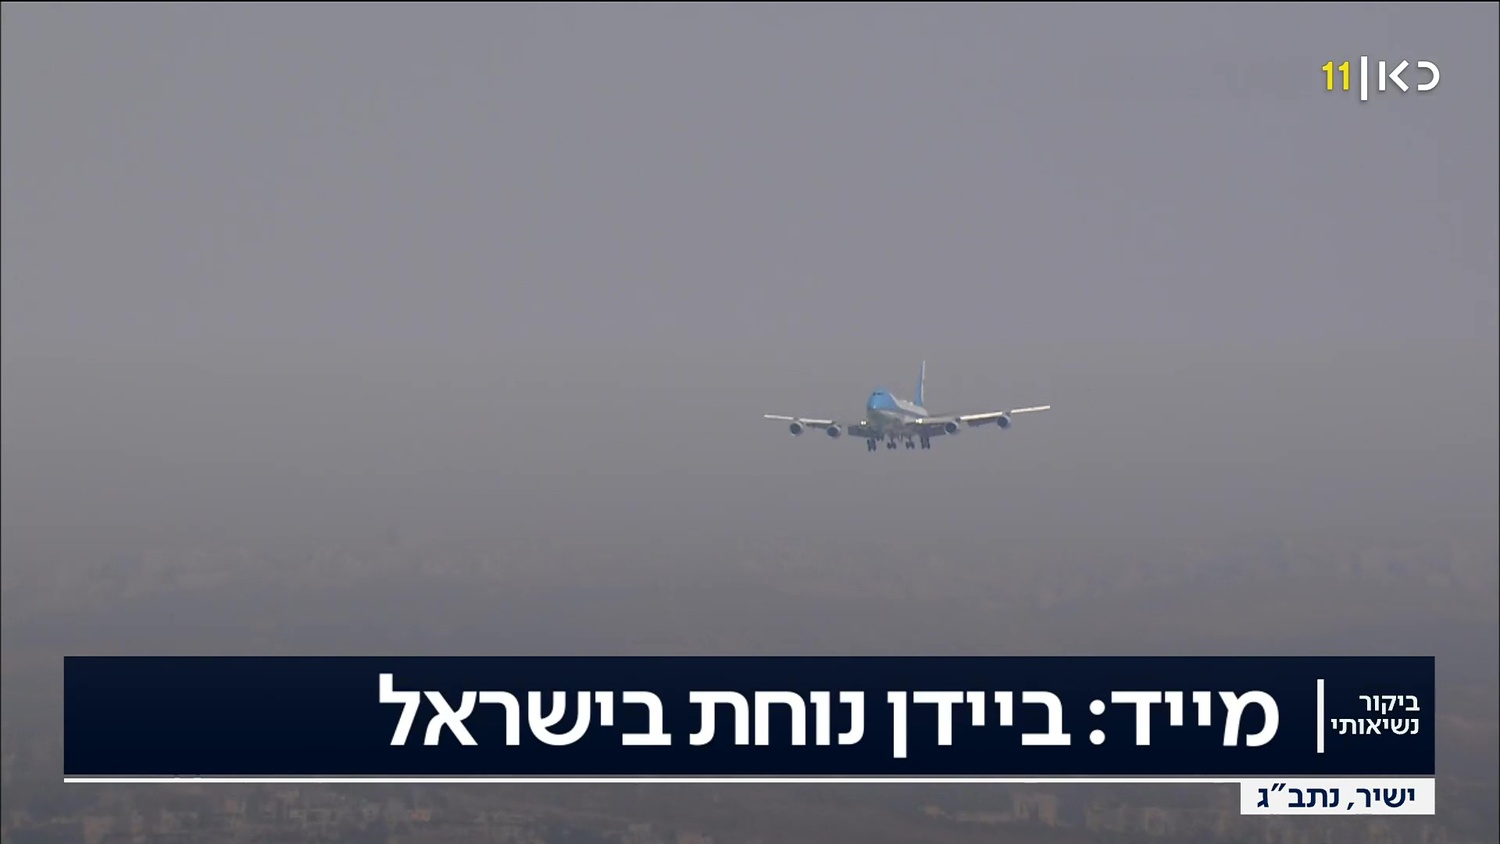 מטוס האייר פורס 1 נחת בנתב"ג - נשיא ארצות הברית ג'ו ביידן בישראל